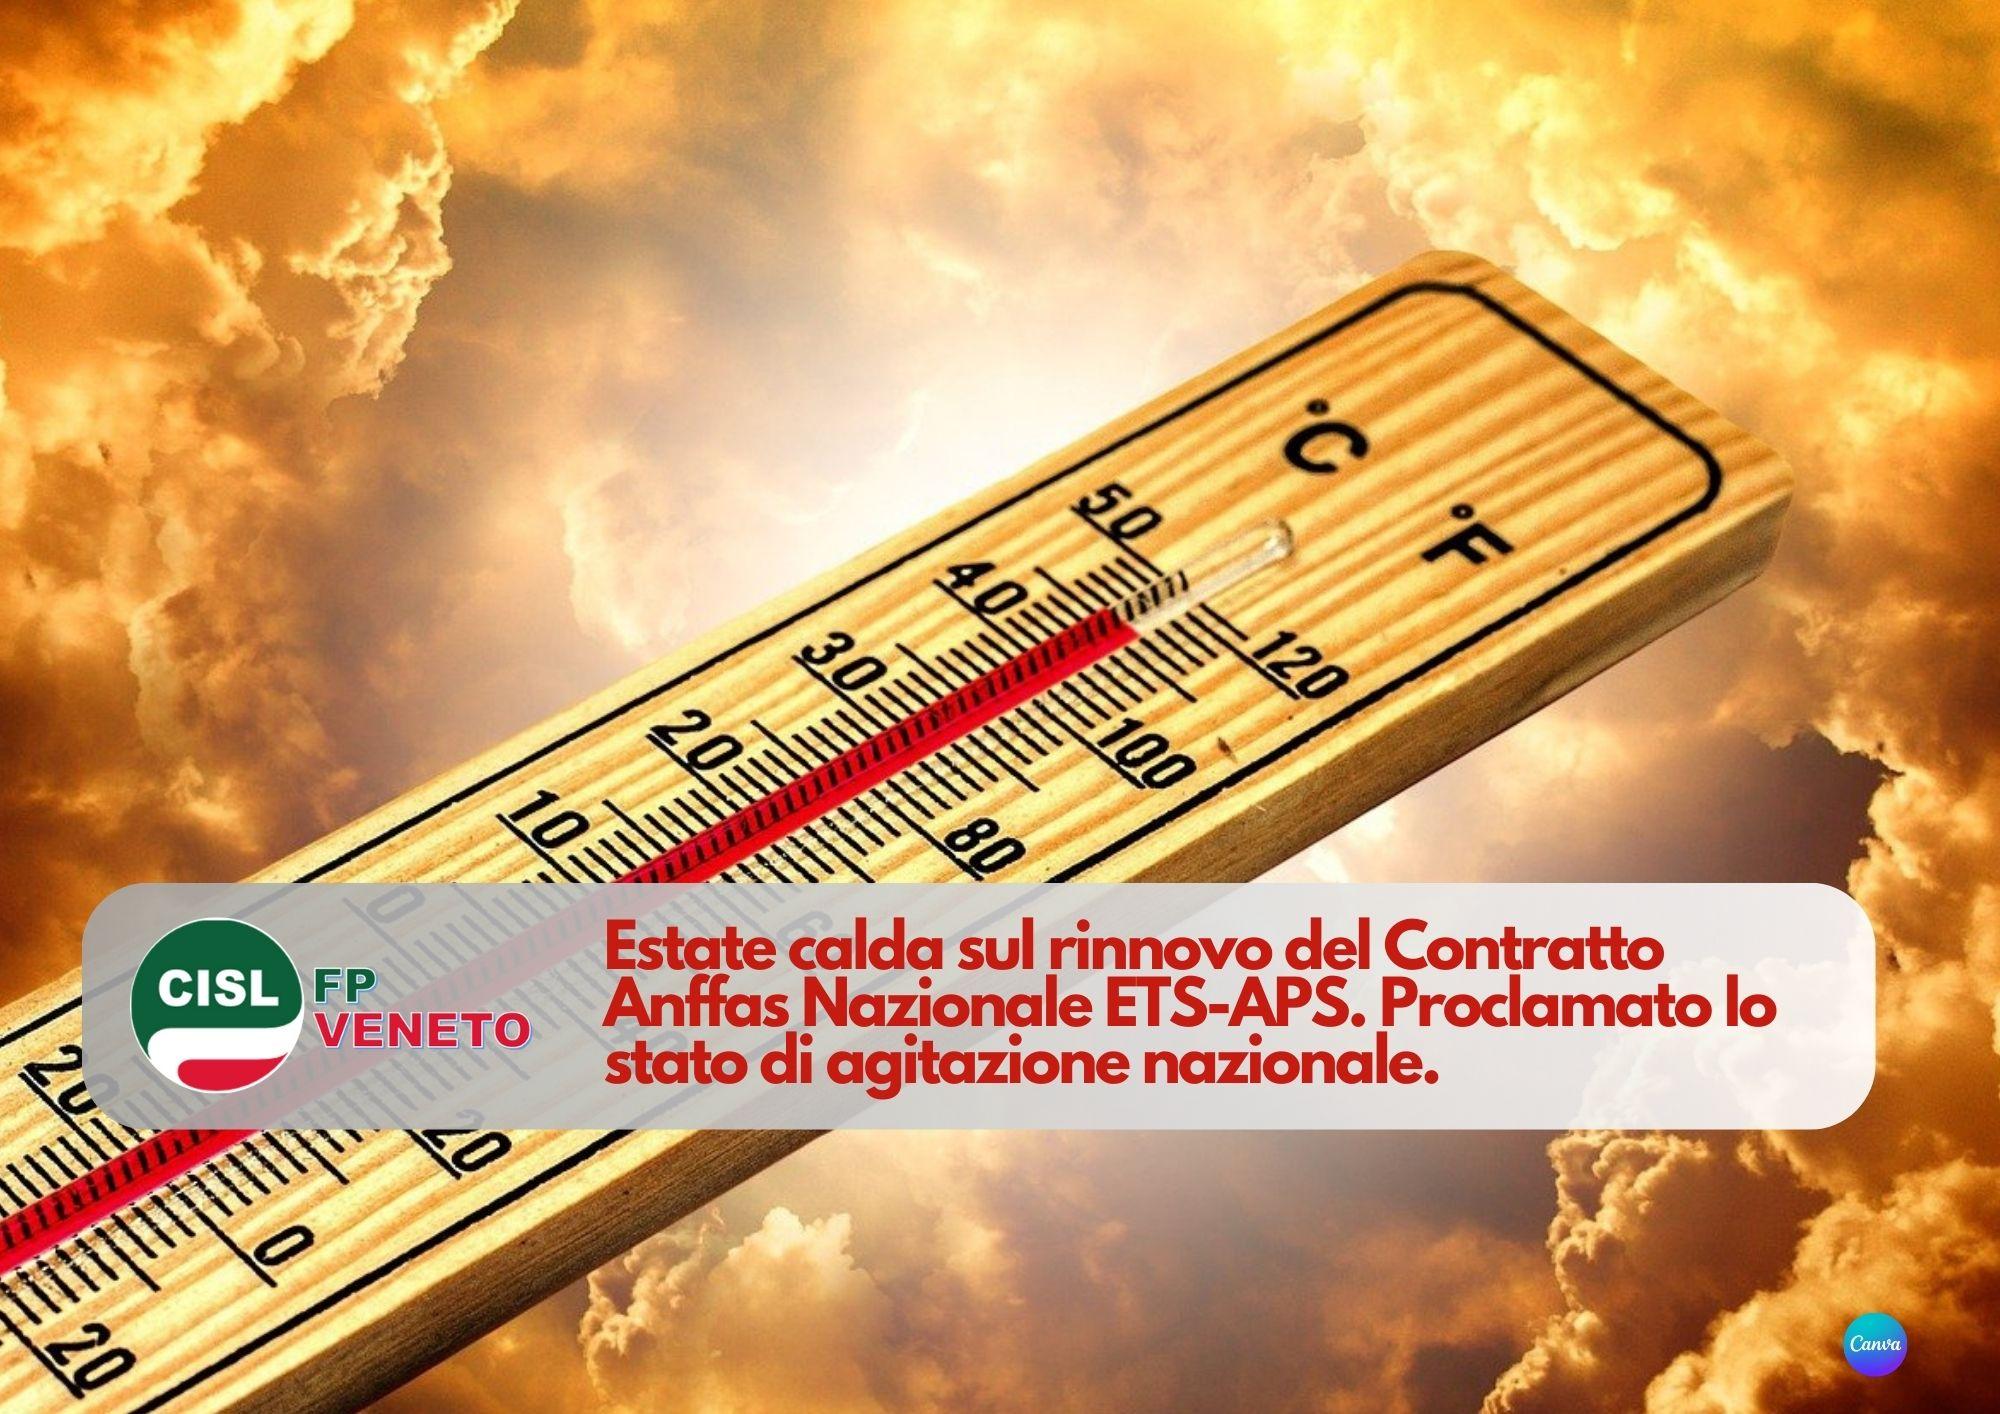 CISL FP Veneto. Estate calda sul rinnovo Contratto Anffas Nazionale ETS-APS. Proclamato stato di agitazione